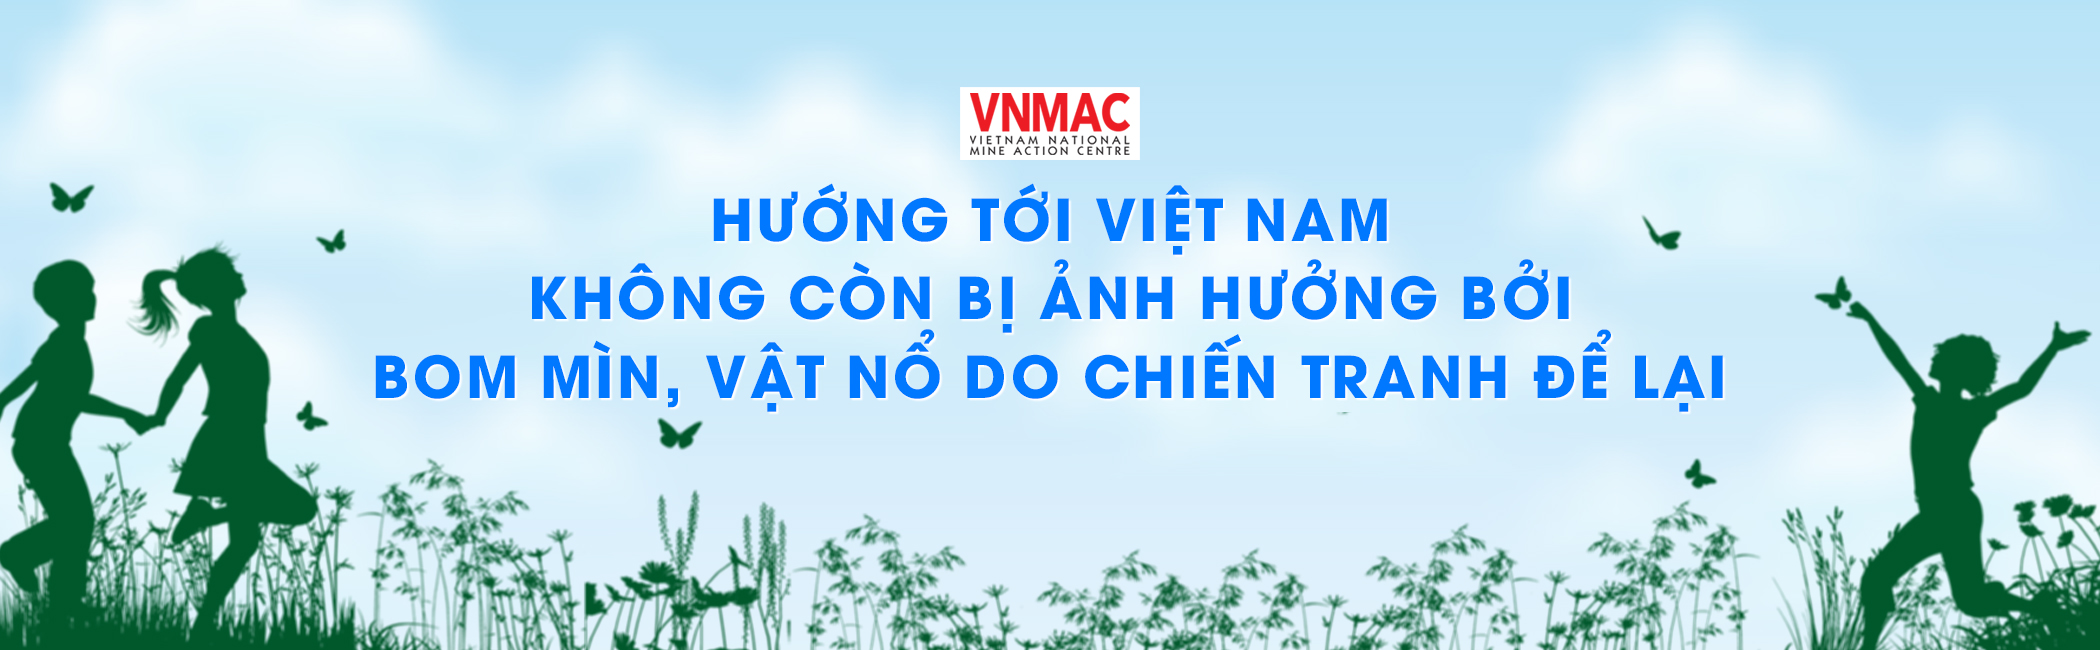 Banner cuộc thi Đà Nẵng